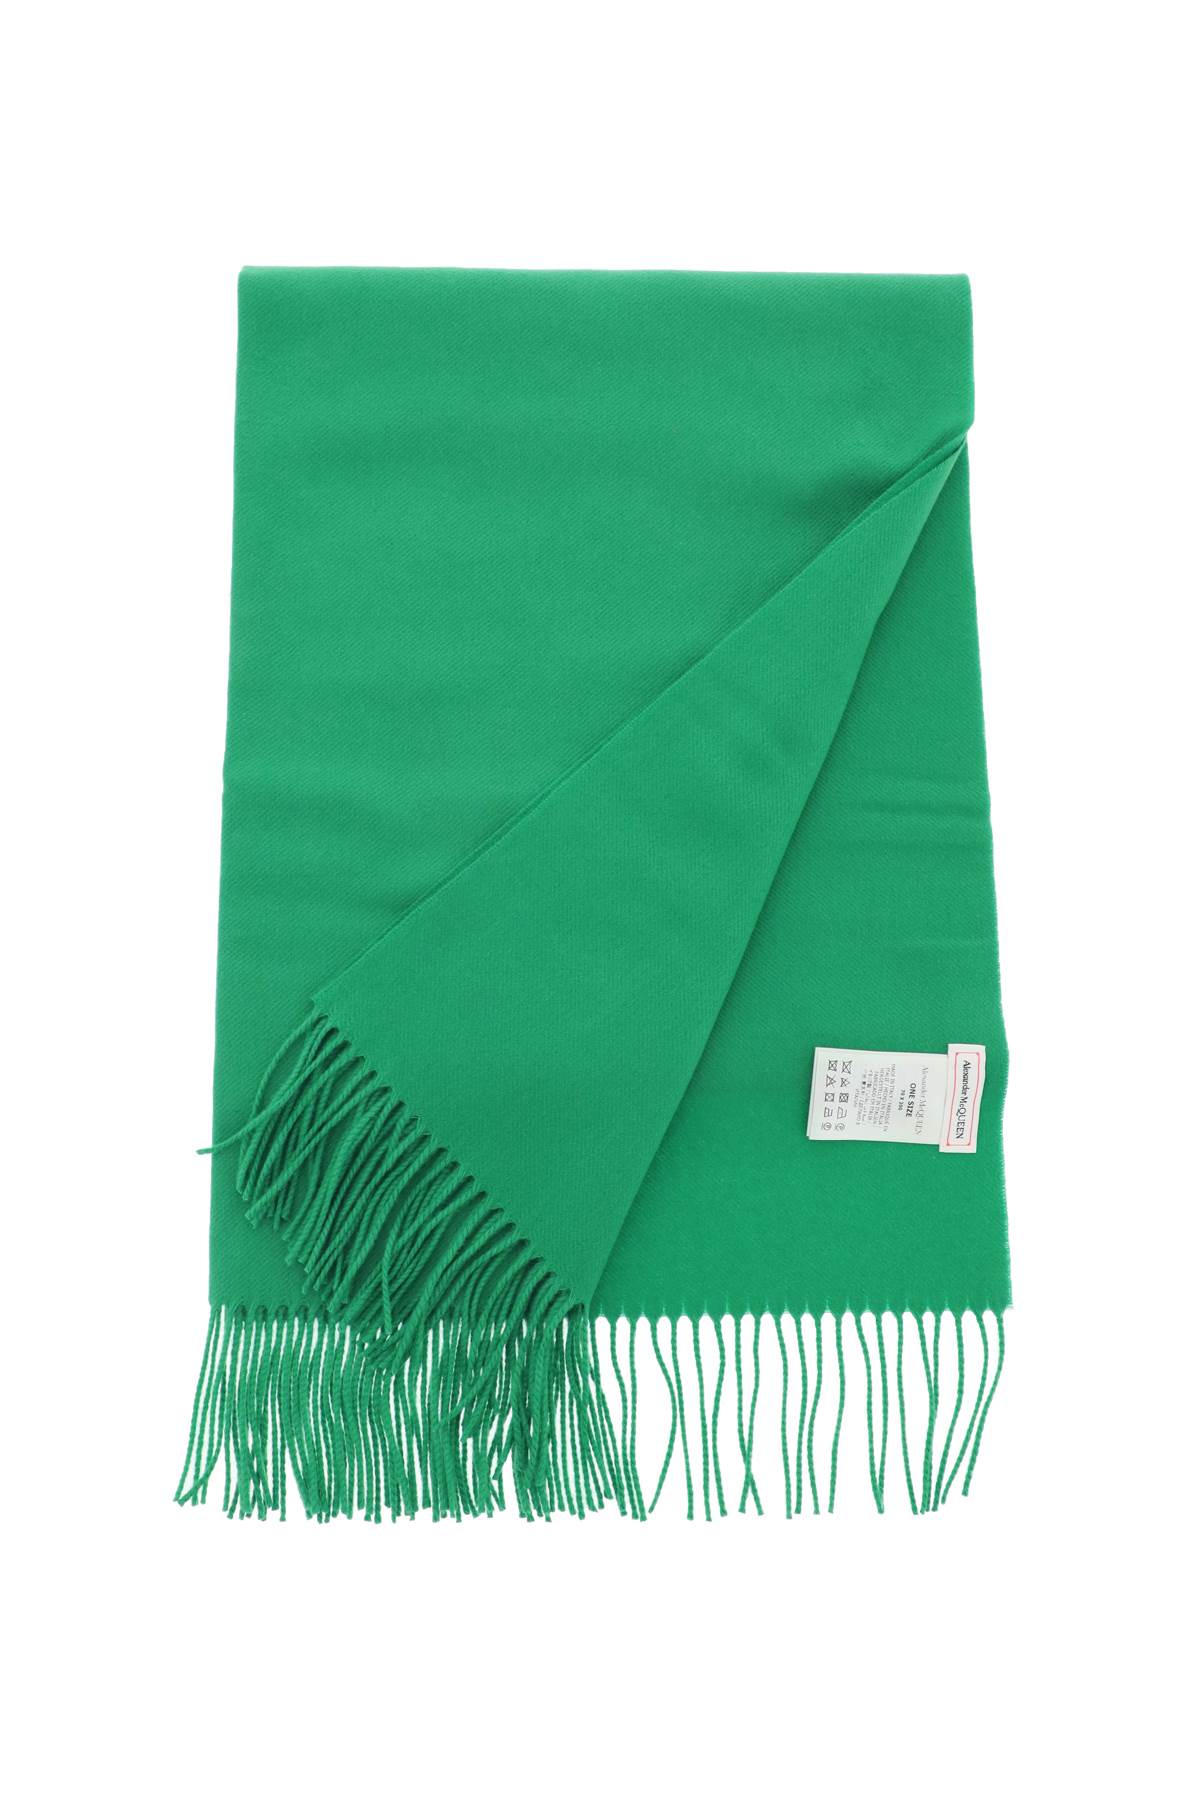 繊細な刺繍が施されたグリーンのカシミヤスカーフ